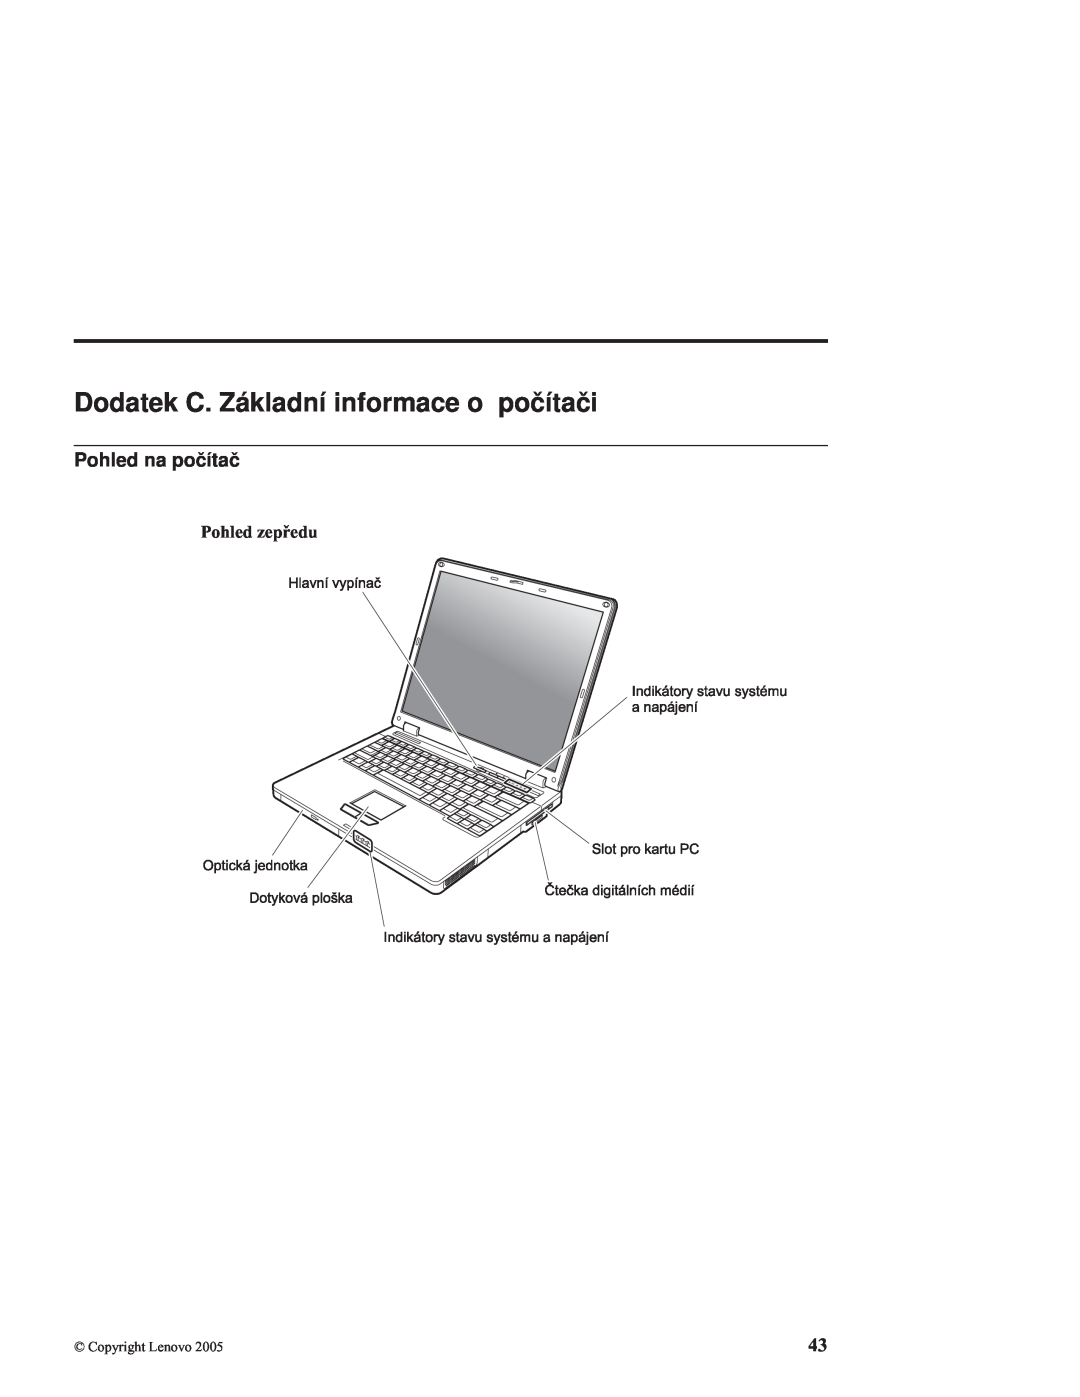 Lenovo C100 manual Dodatek C. Základní informace o počítači, Pohled na počítač, Pohled zepředu 